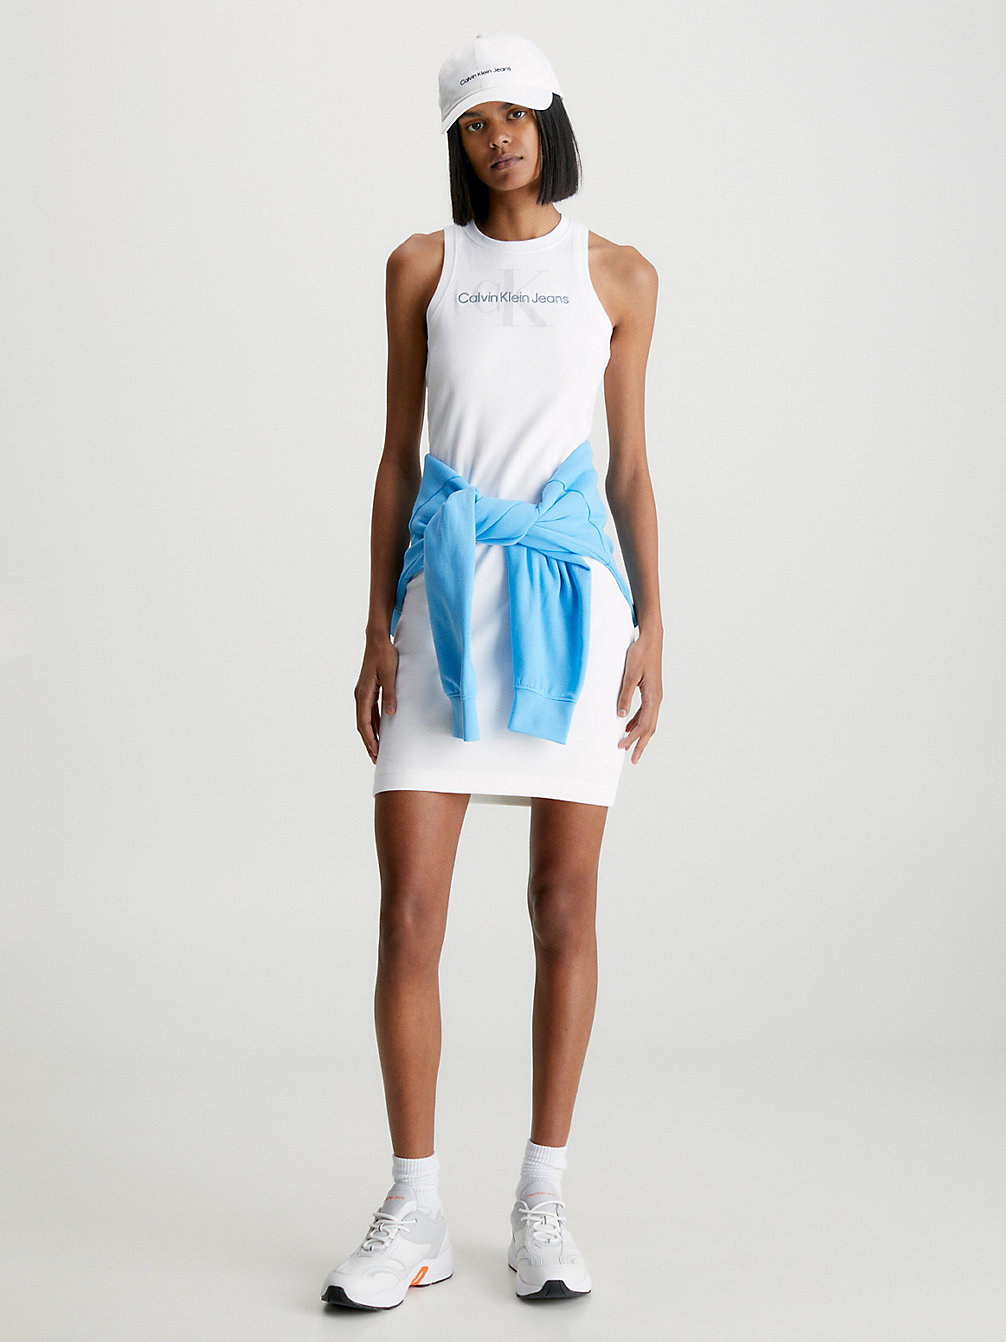 BRIGHT WHITE Abito Sottoveste A Costine Con Monogramma Slim undefined donna Calvin Klein